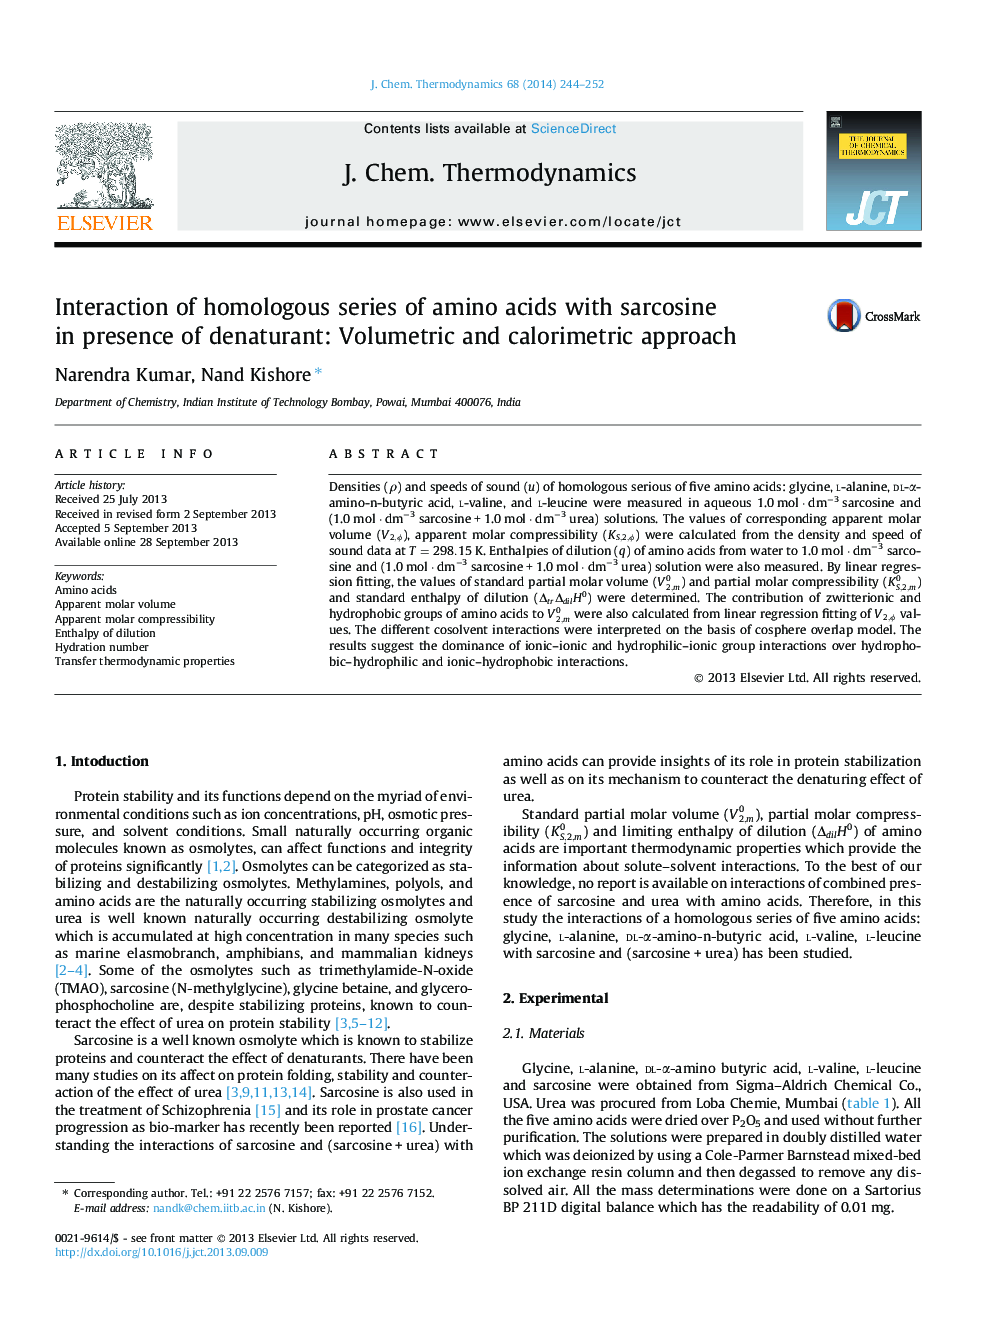 تعامل سری های همولوگ از اسیدهای آمینه با سارکوزین در حضور دنتورانت: رویکرد حجمی و کالریمتریک 